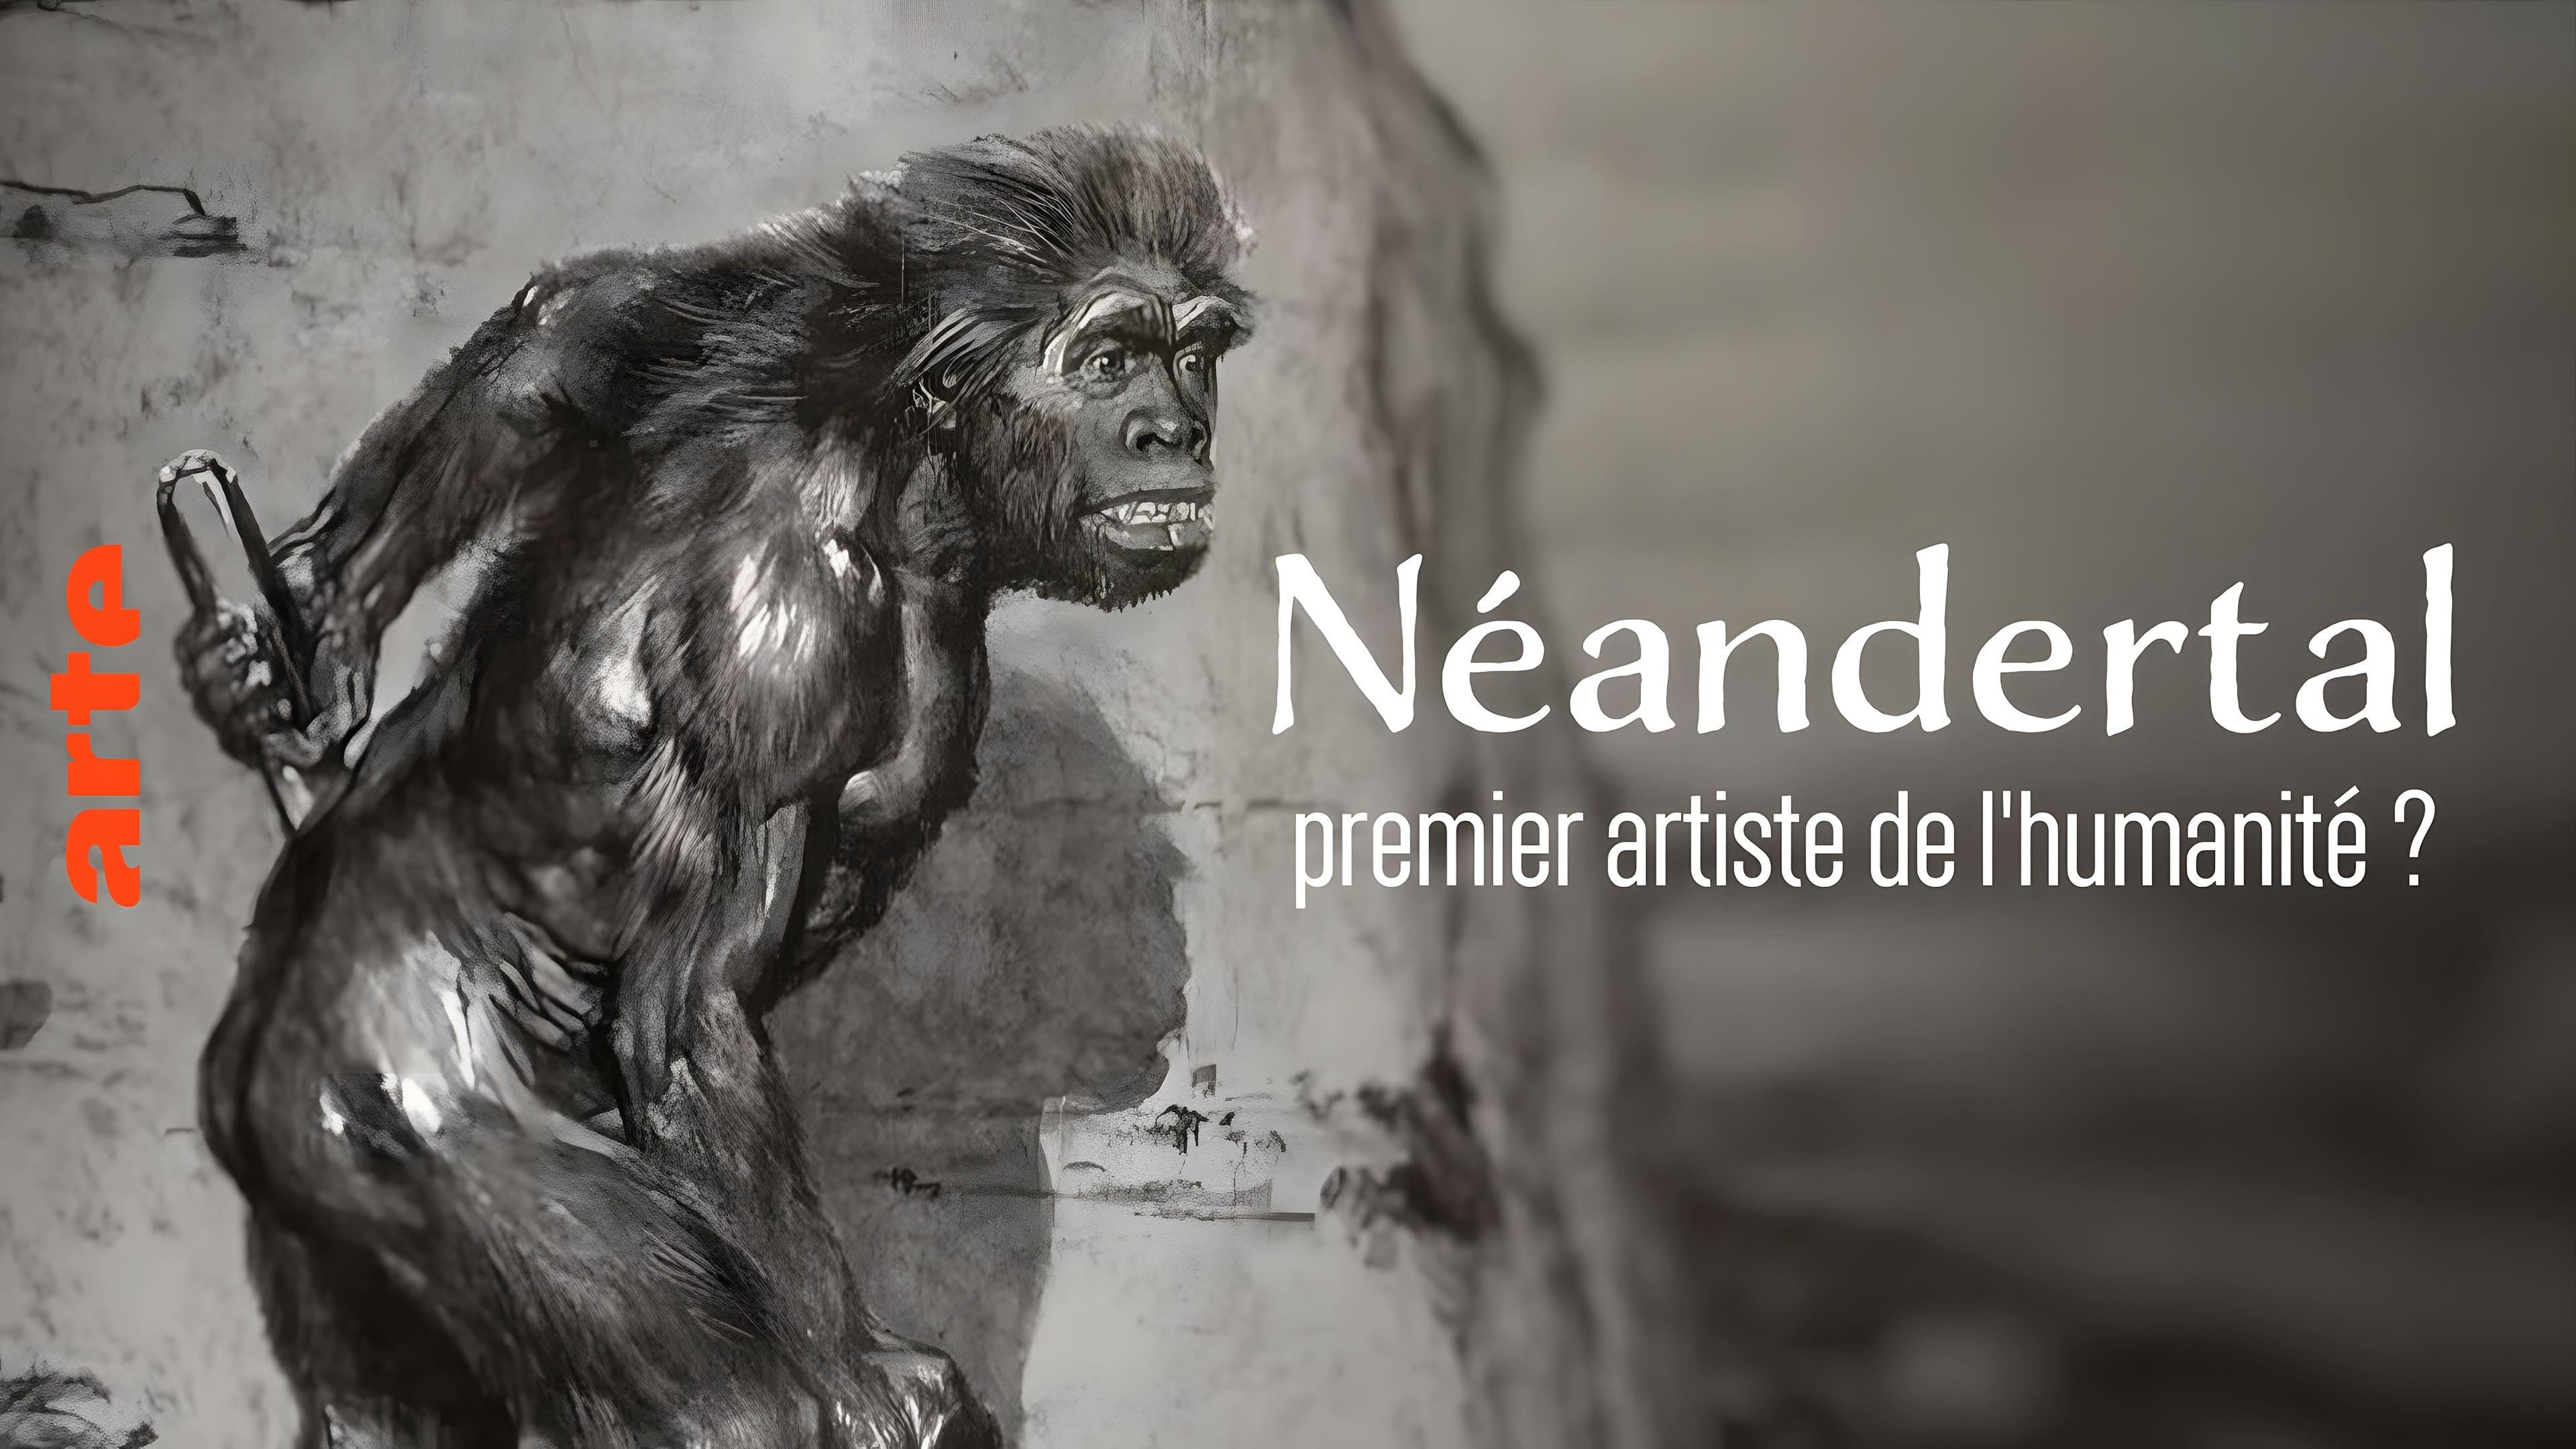 Néandertal, premier artiste de l'humanité ? backdrop